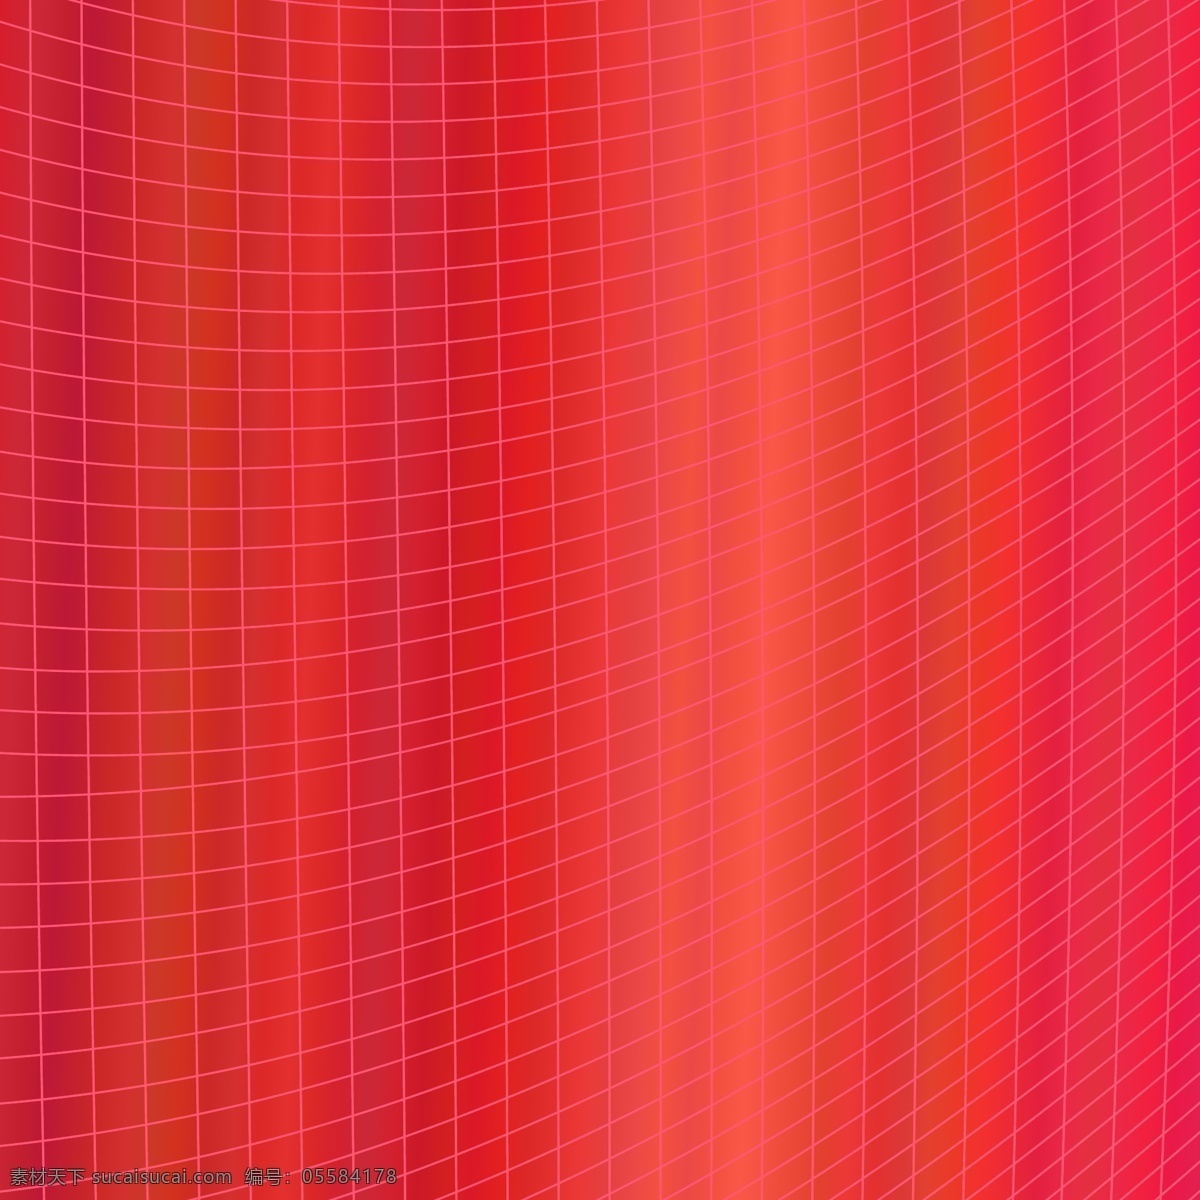 基于 曲线 角 红色 动态 抽象 几何 网格 矢量 图形设计 背景 图案 小册子 抽象背景 海报 封面 纸张 线条 红色背景 布局 墙纸 平面设计 艺术 网页 弓